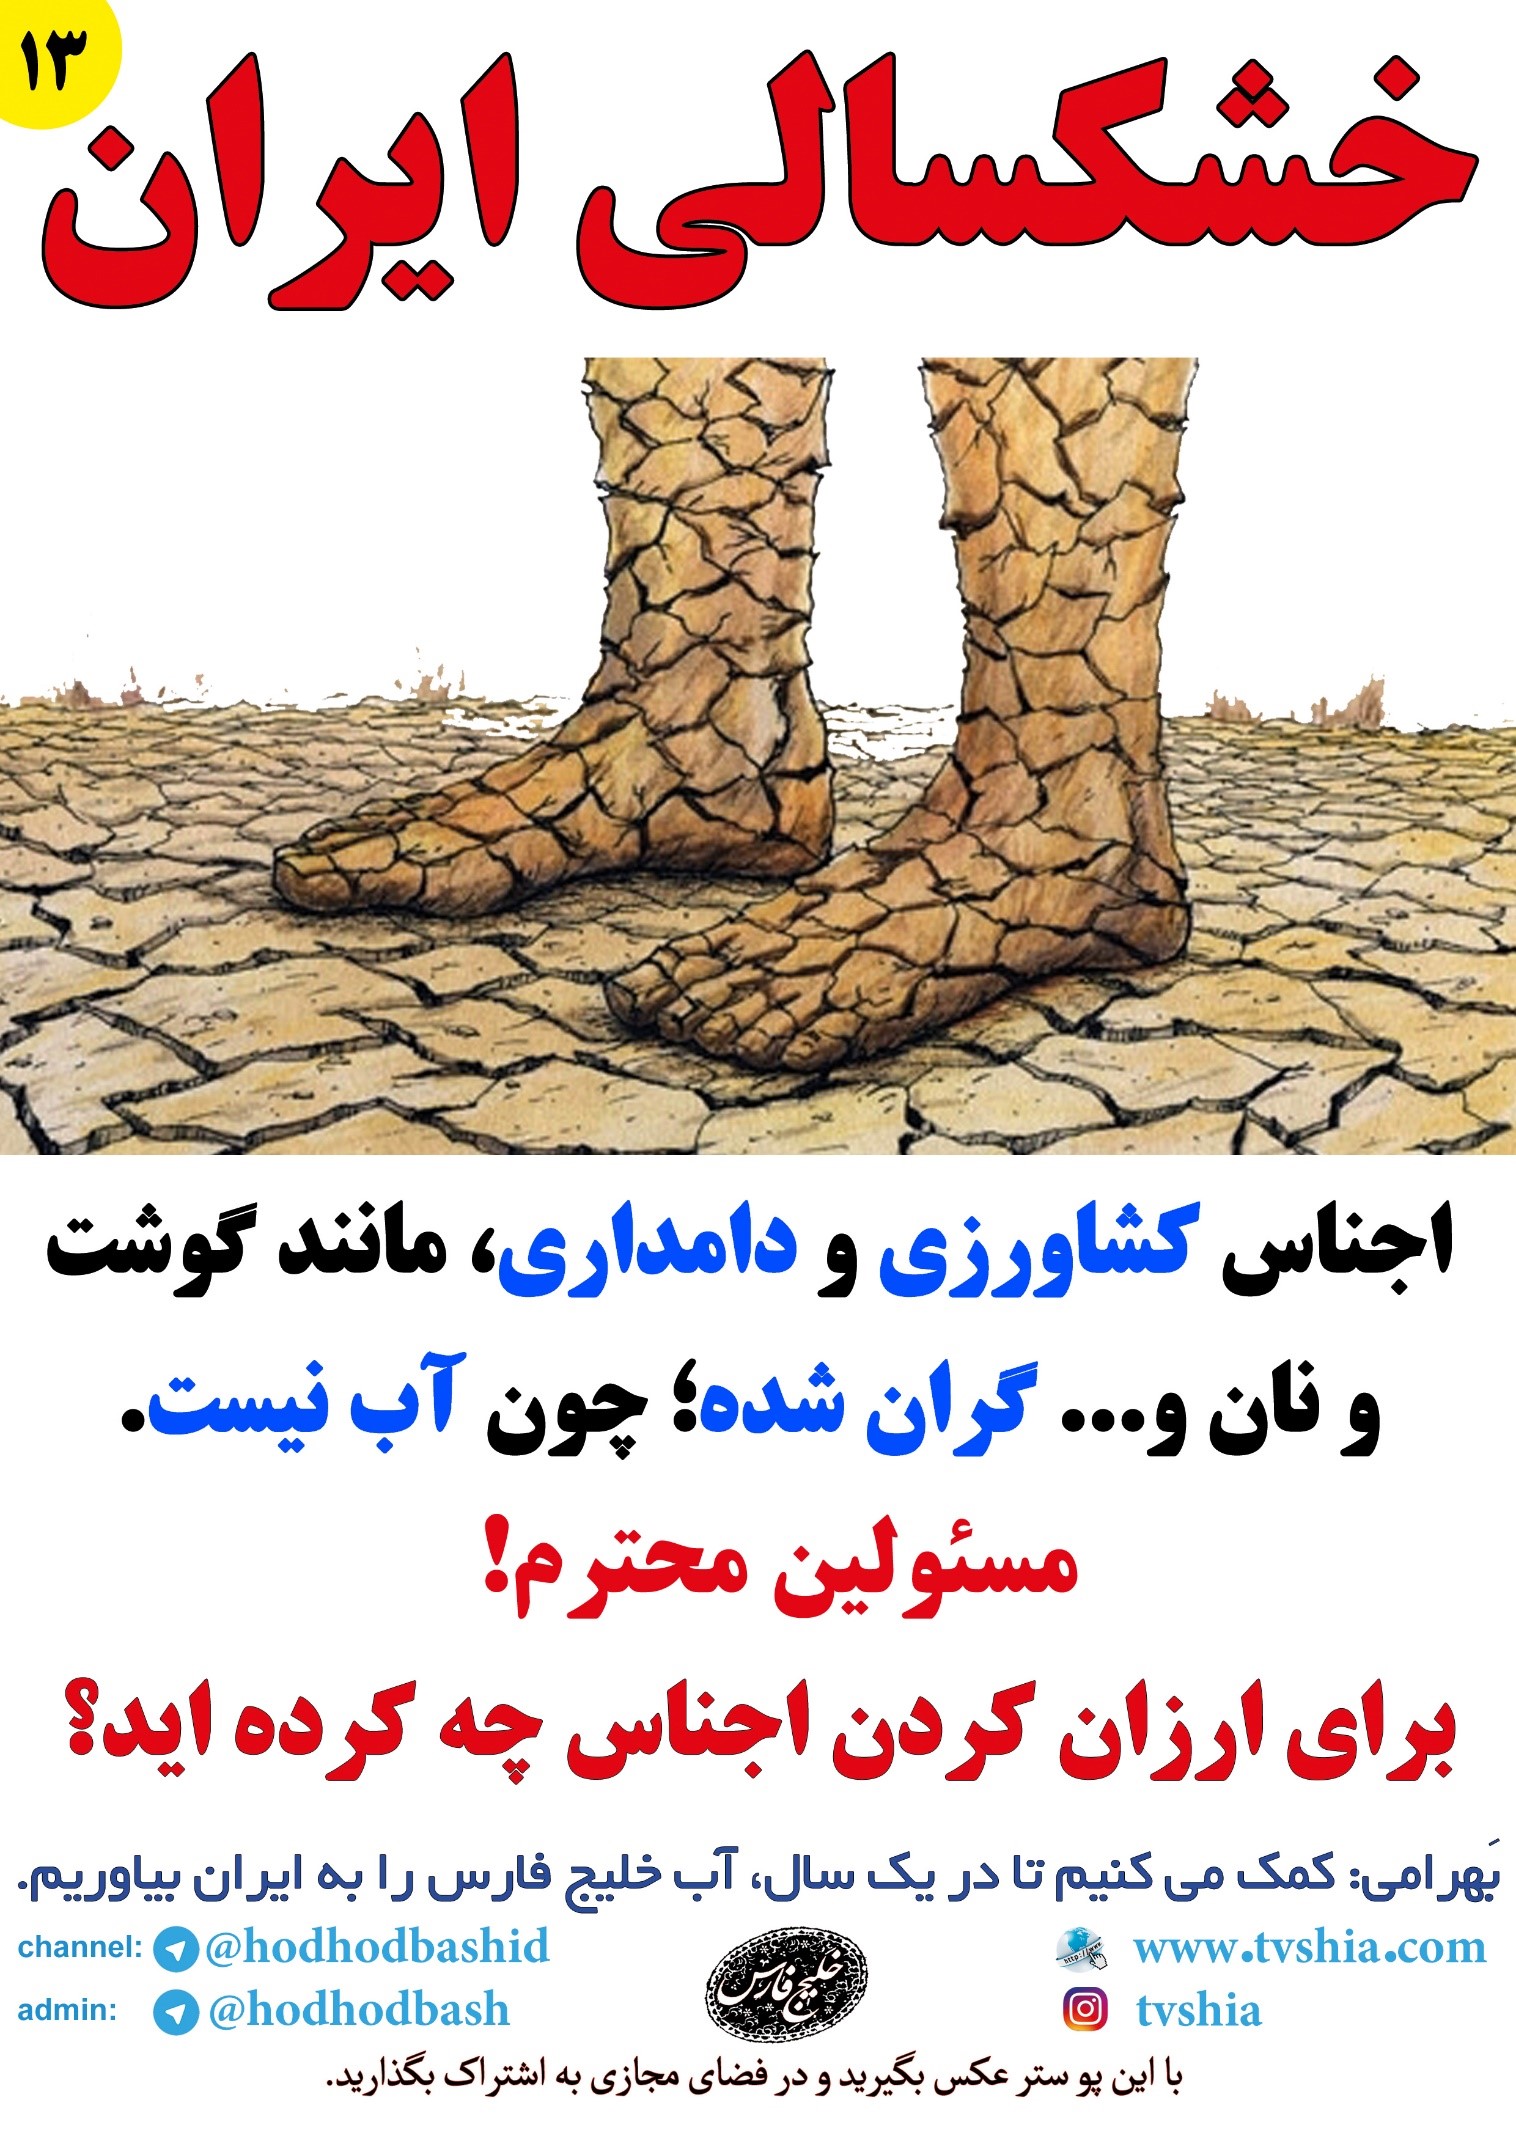 علی بهرامی نیکو- خشکسالی - هزار و یک قطره- راهکار دو ماهه غیر عادی خشکسالی - کتاب هزار و یک قطره 